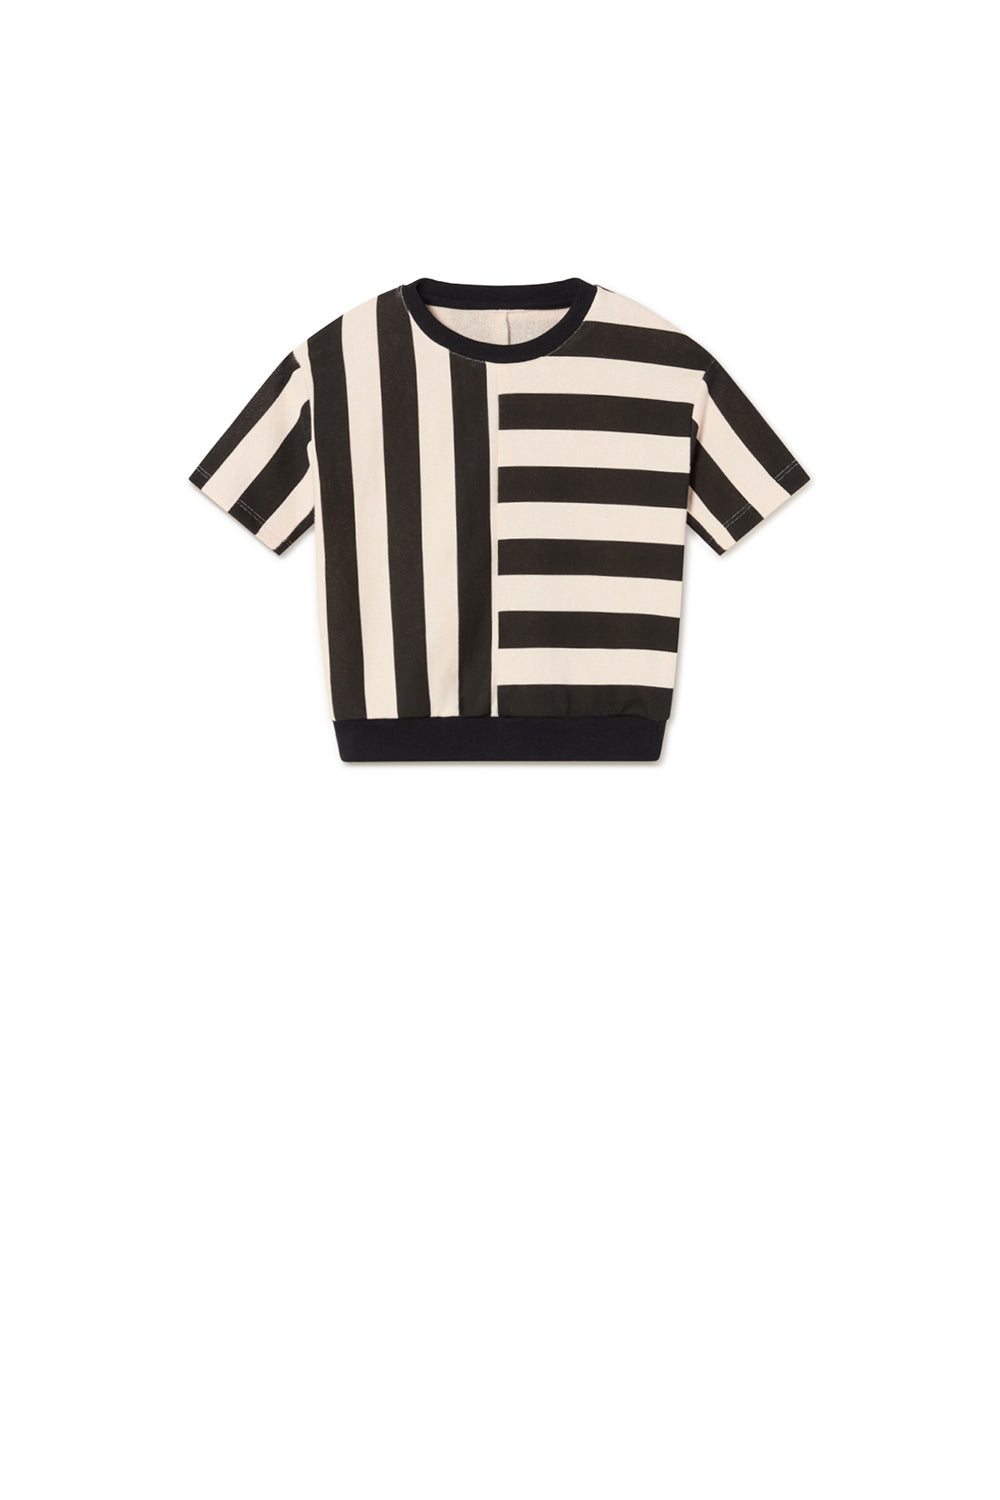 Iconic Lines S/S Sweatshirt-Cream/Black